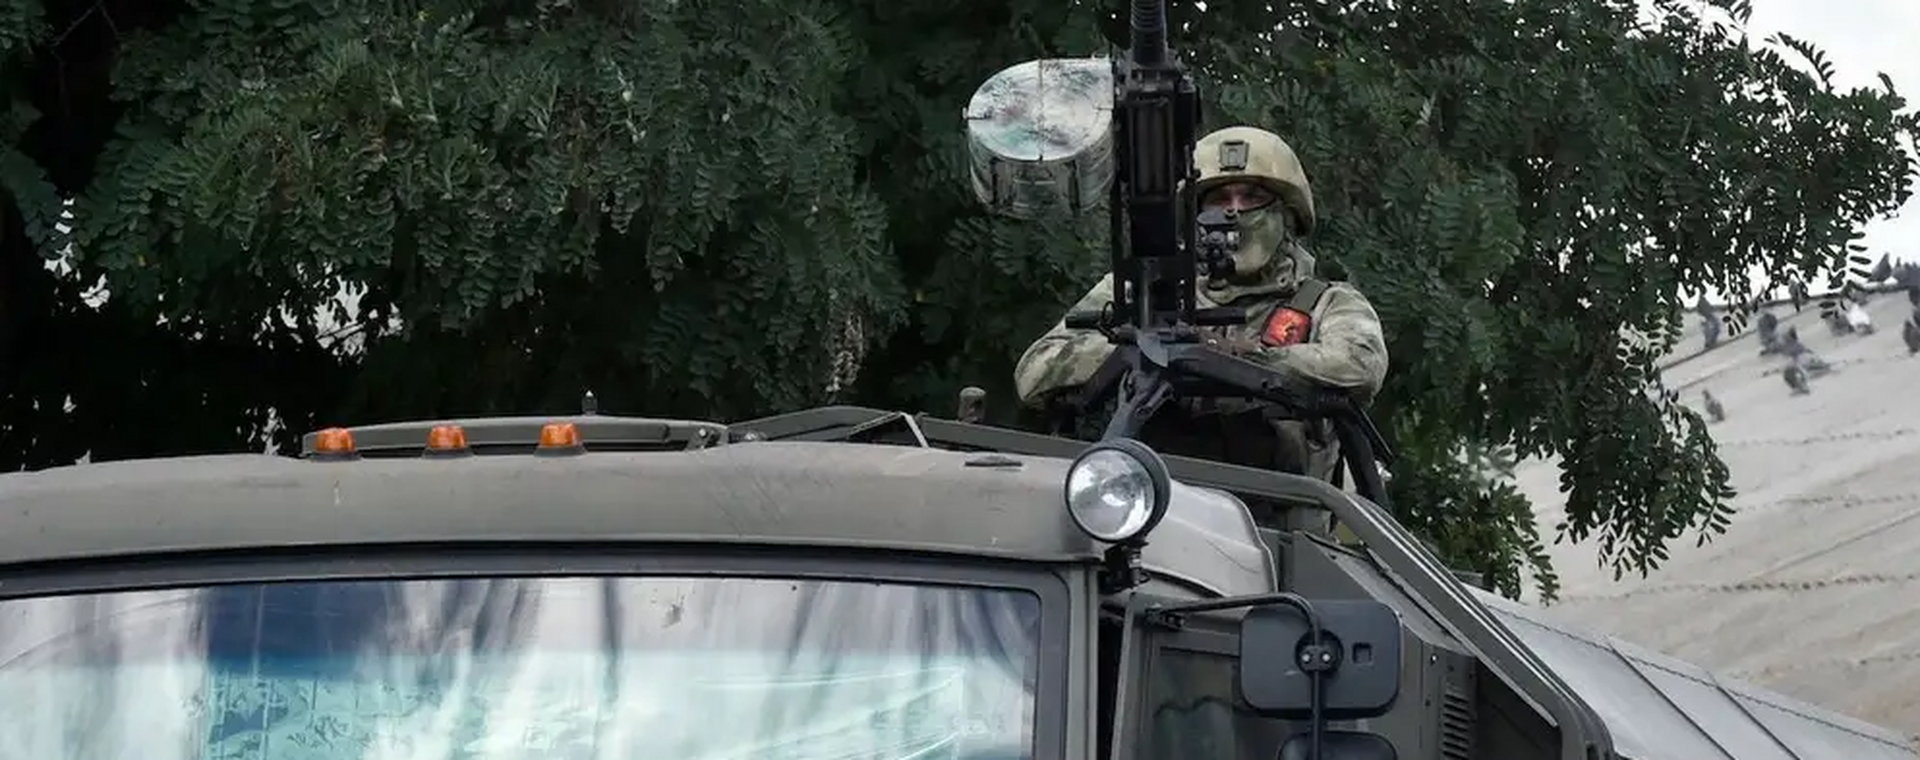 Rosyjski żołnierz na pojeździe oznaczonym literą "Z"